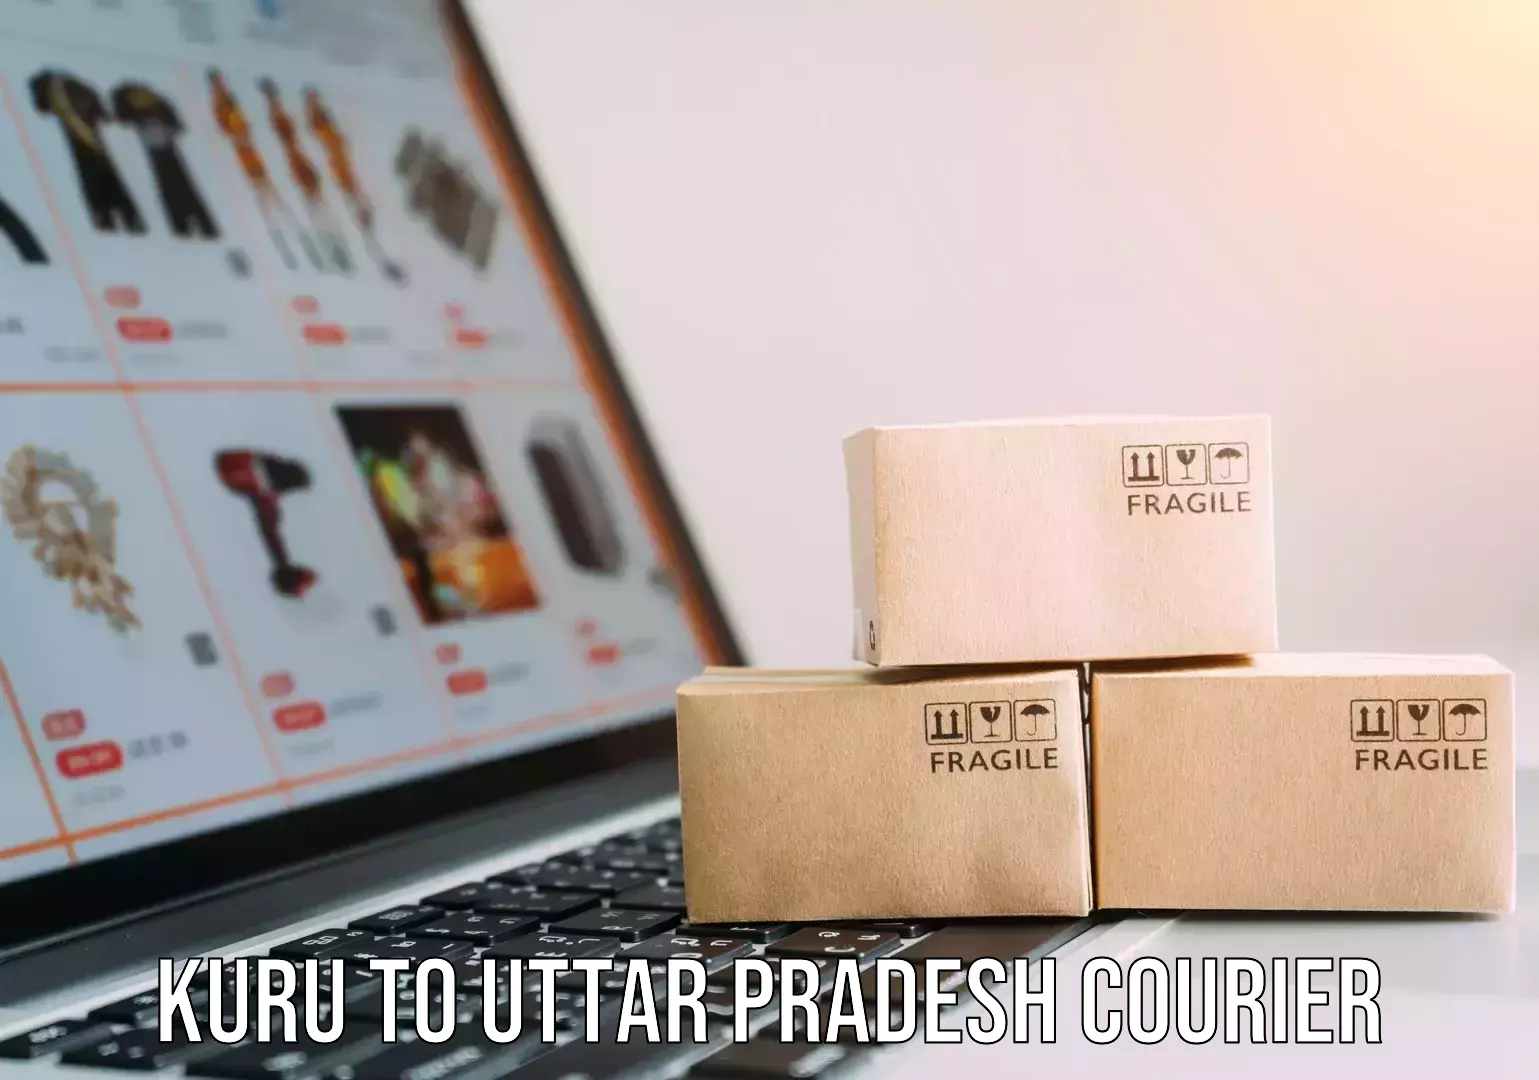 Moving and packing experts Kuru to Uttar Pradesh